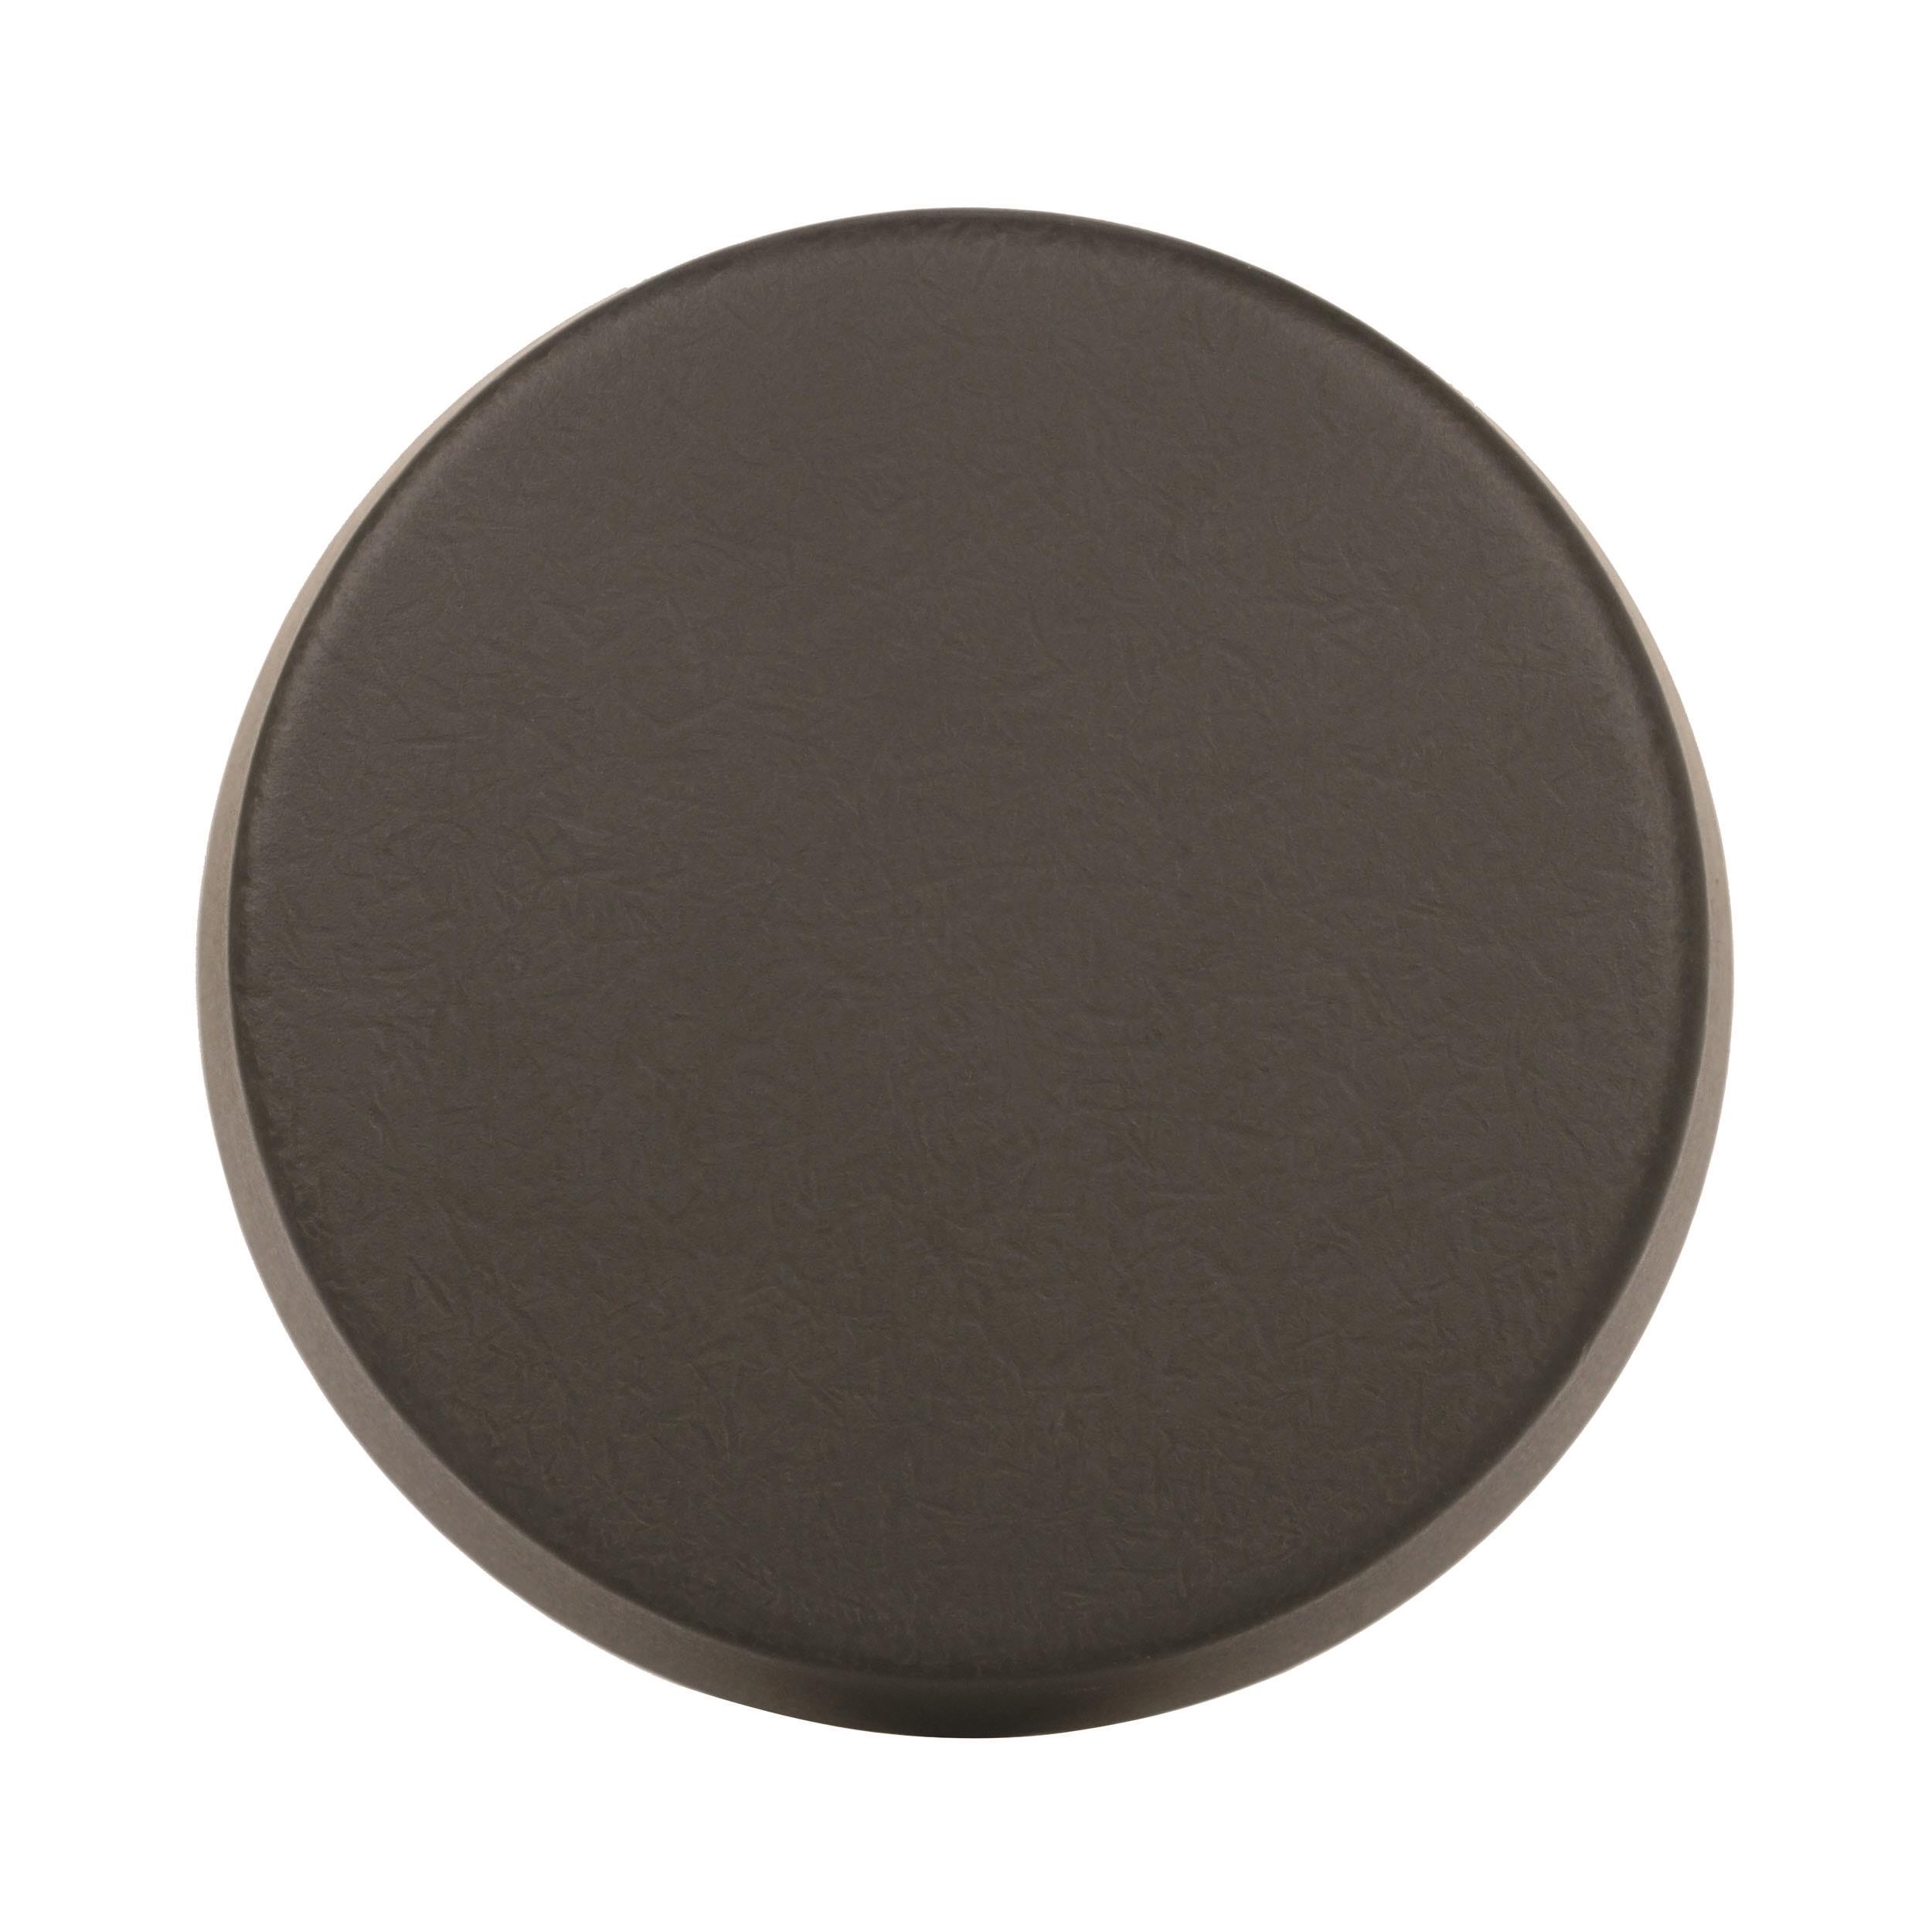 Blackrock Round Knob, 1-5/16 in (33 mm), Black Bronze